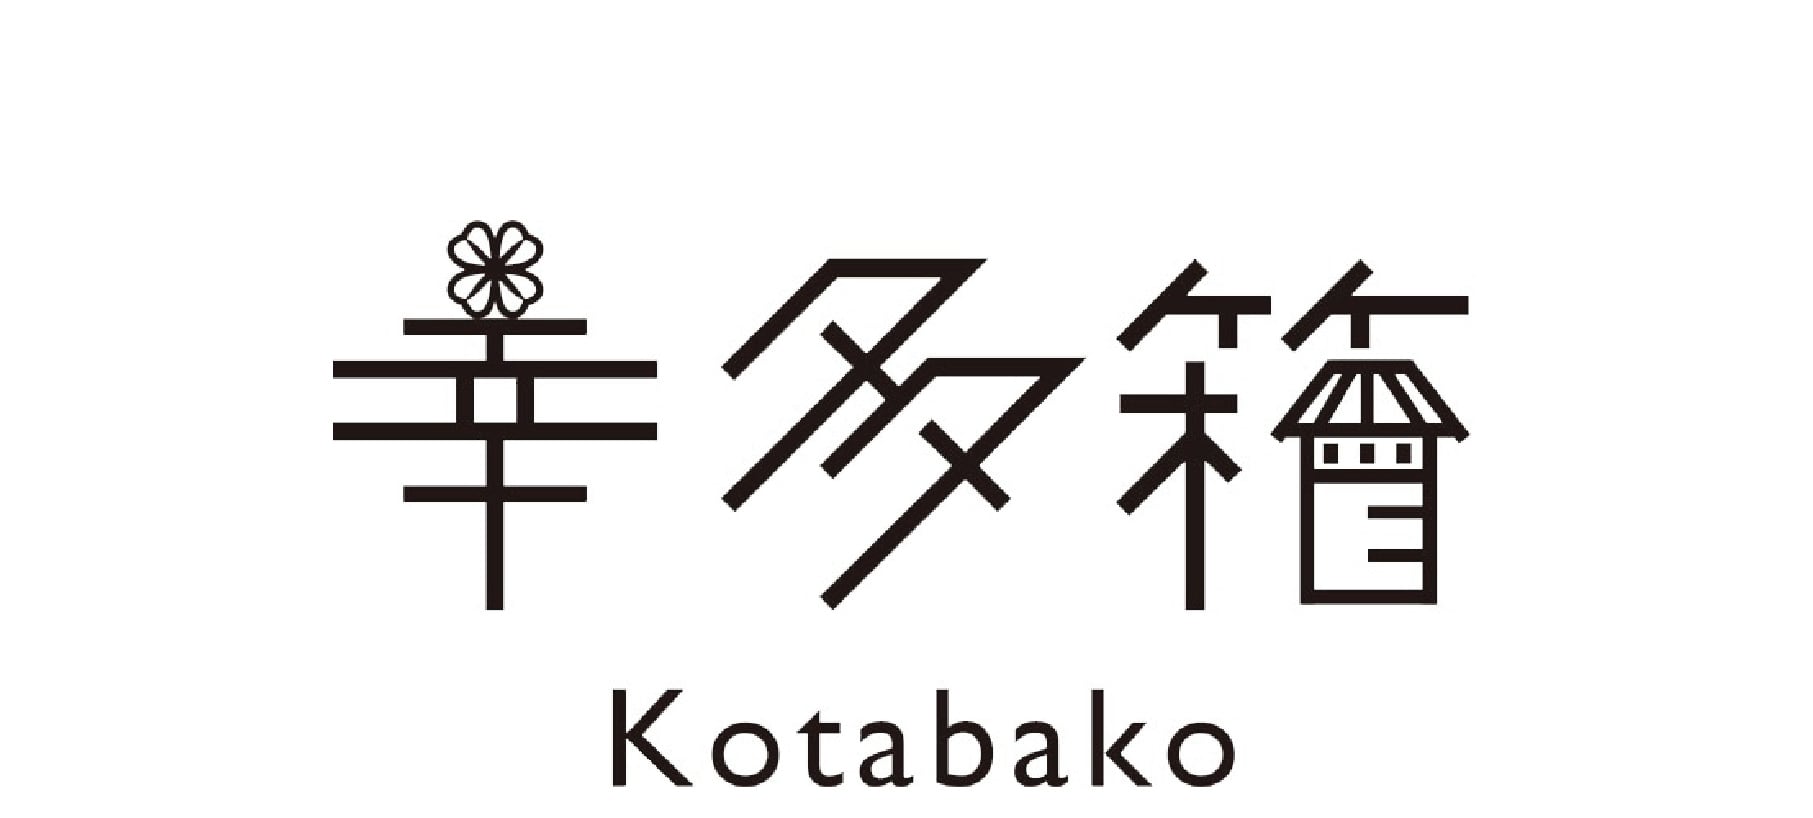 ハンドメイド雑貨 幸多箱-kotabako-